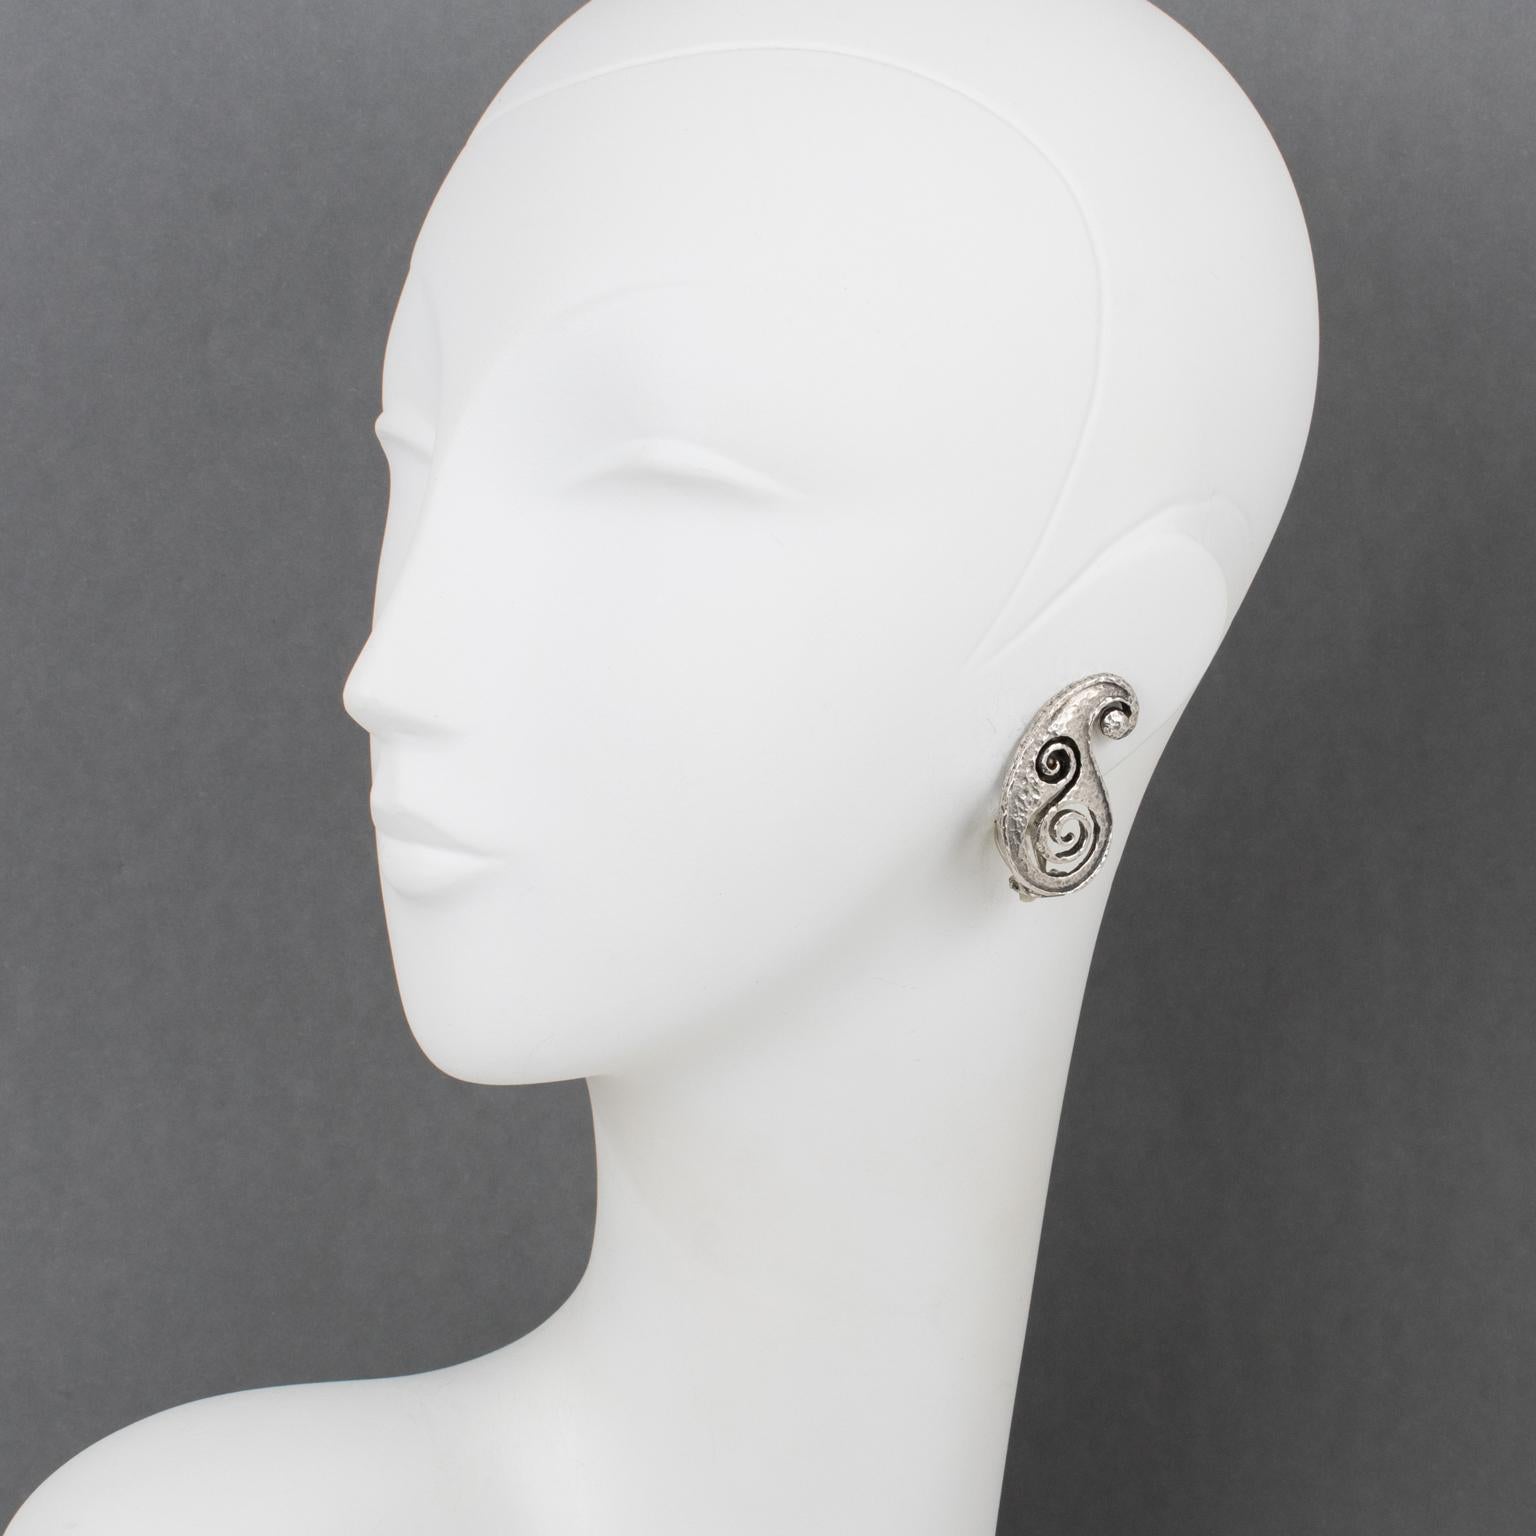 Paco Rabanne Paris entwarf diese futuristischen Ohrringe aus Metall in den 1990er Jahren. Das Design besteht aus einer leicht gehämmerten, durchsichtigen Kommaform aus Silberblech mit Schnitzereien. Die Clips sind an der Unterseite mit dem